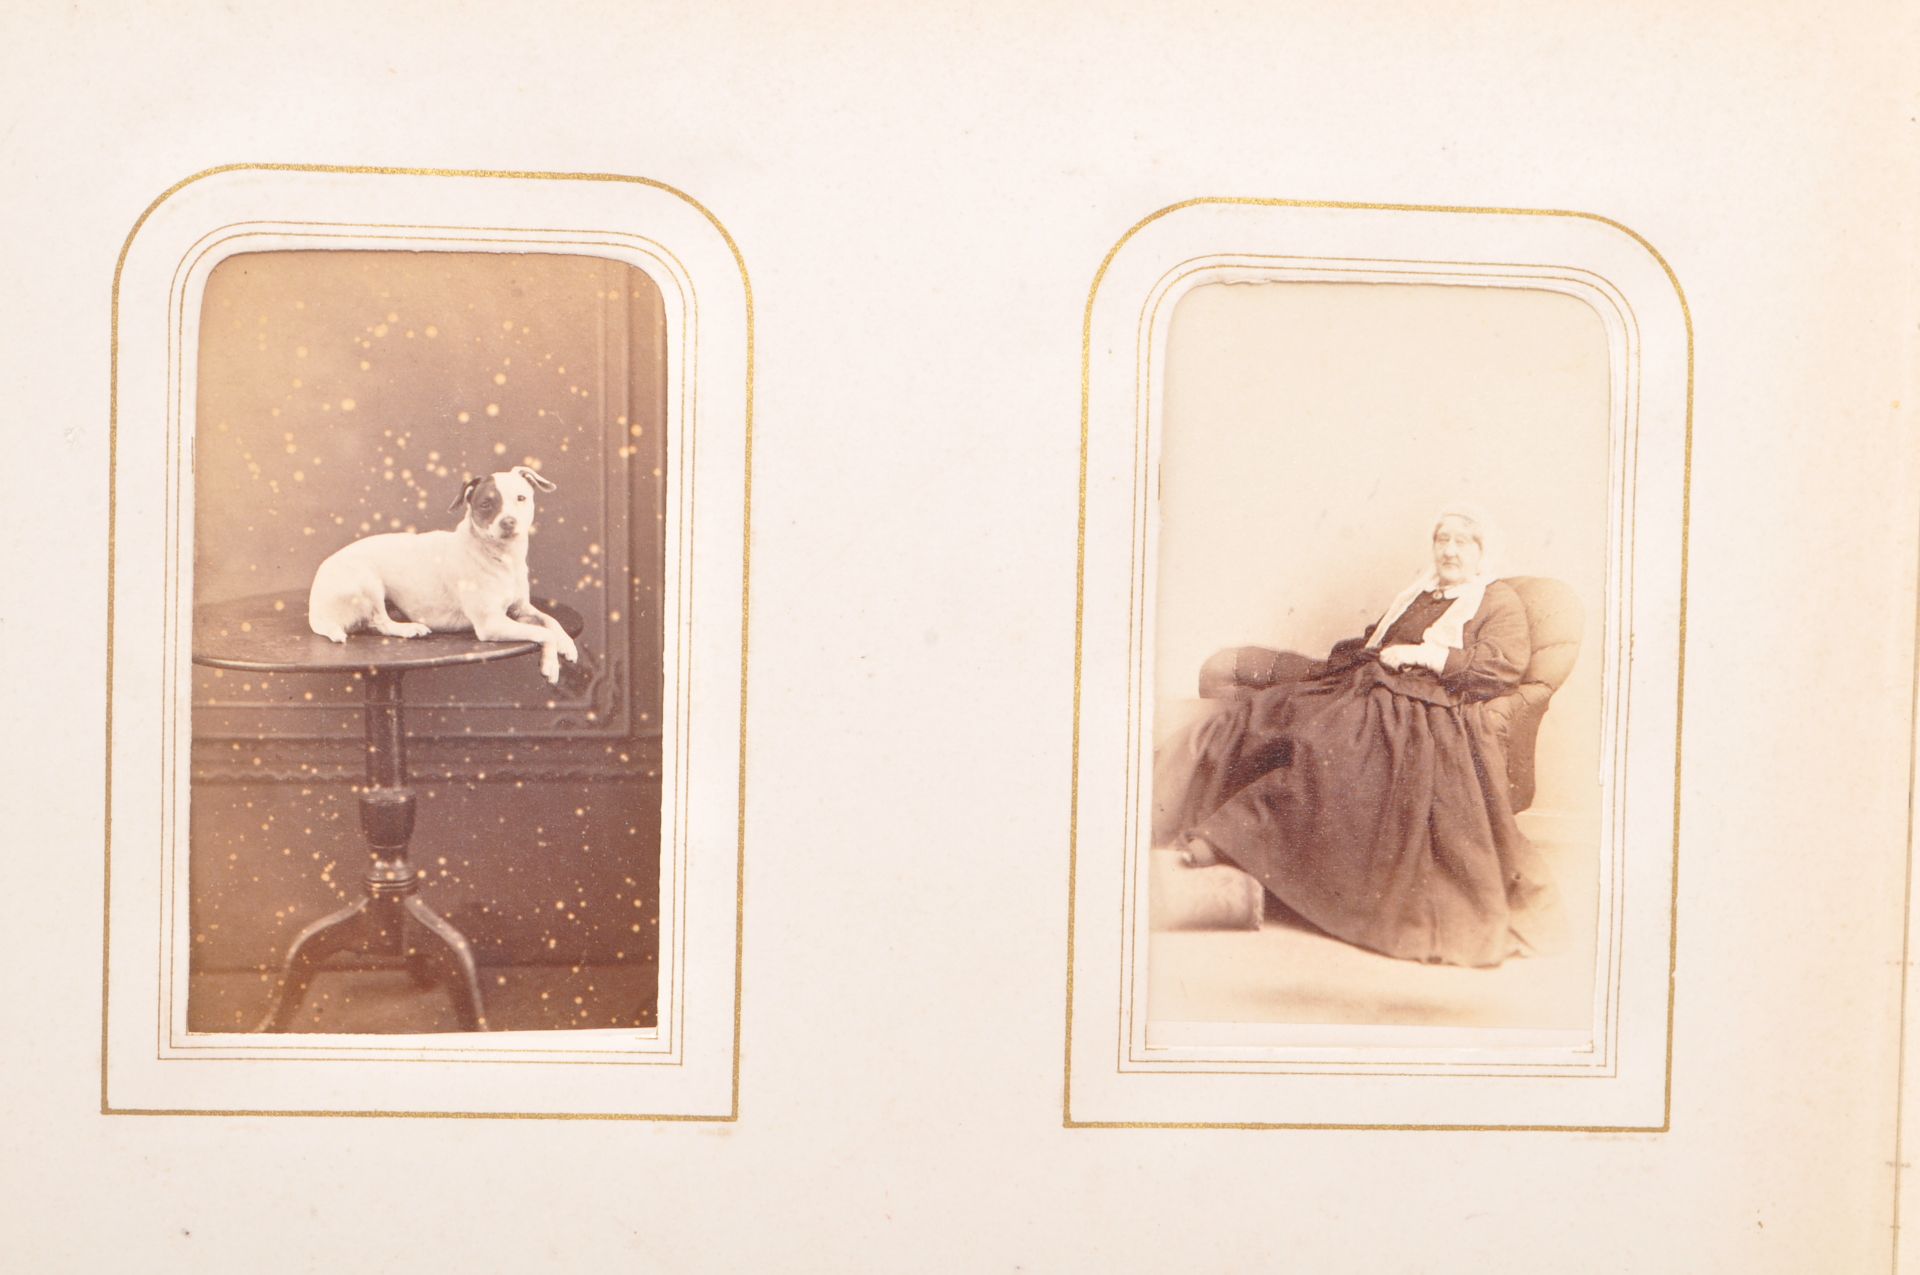 VICTORIAN 1800S ALBUM OF PHOTOGRAPHS INCL. WILLIAM KILBURN - Image 11 of 14